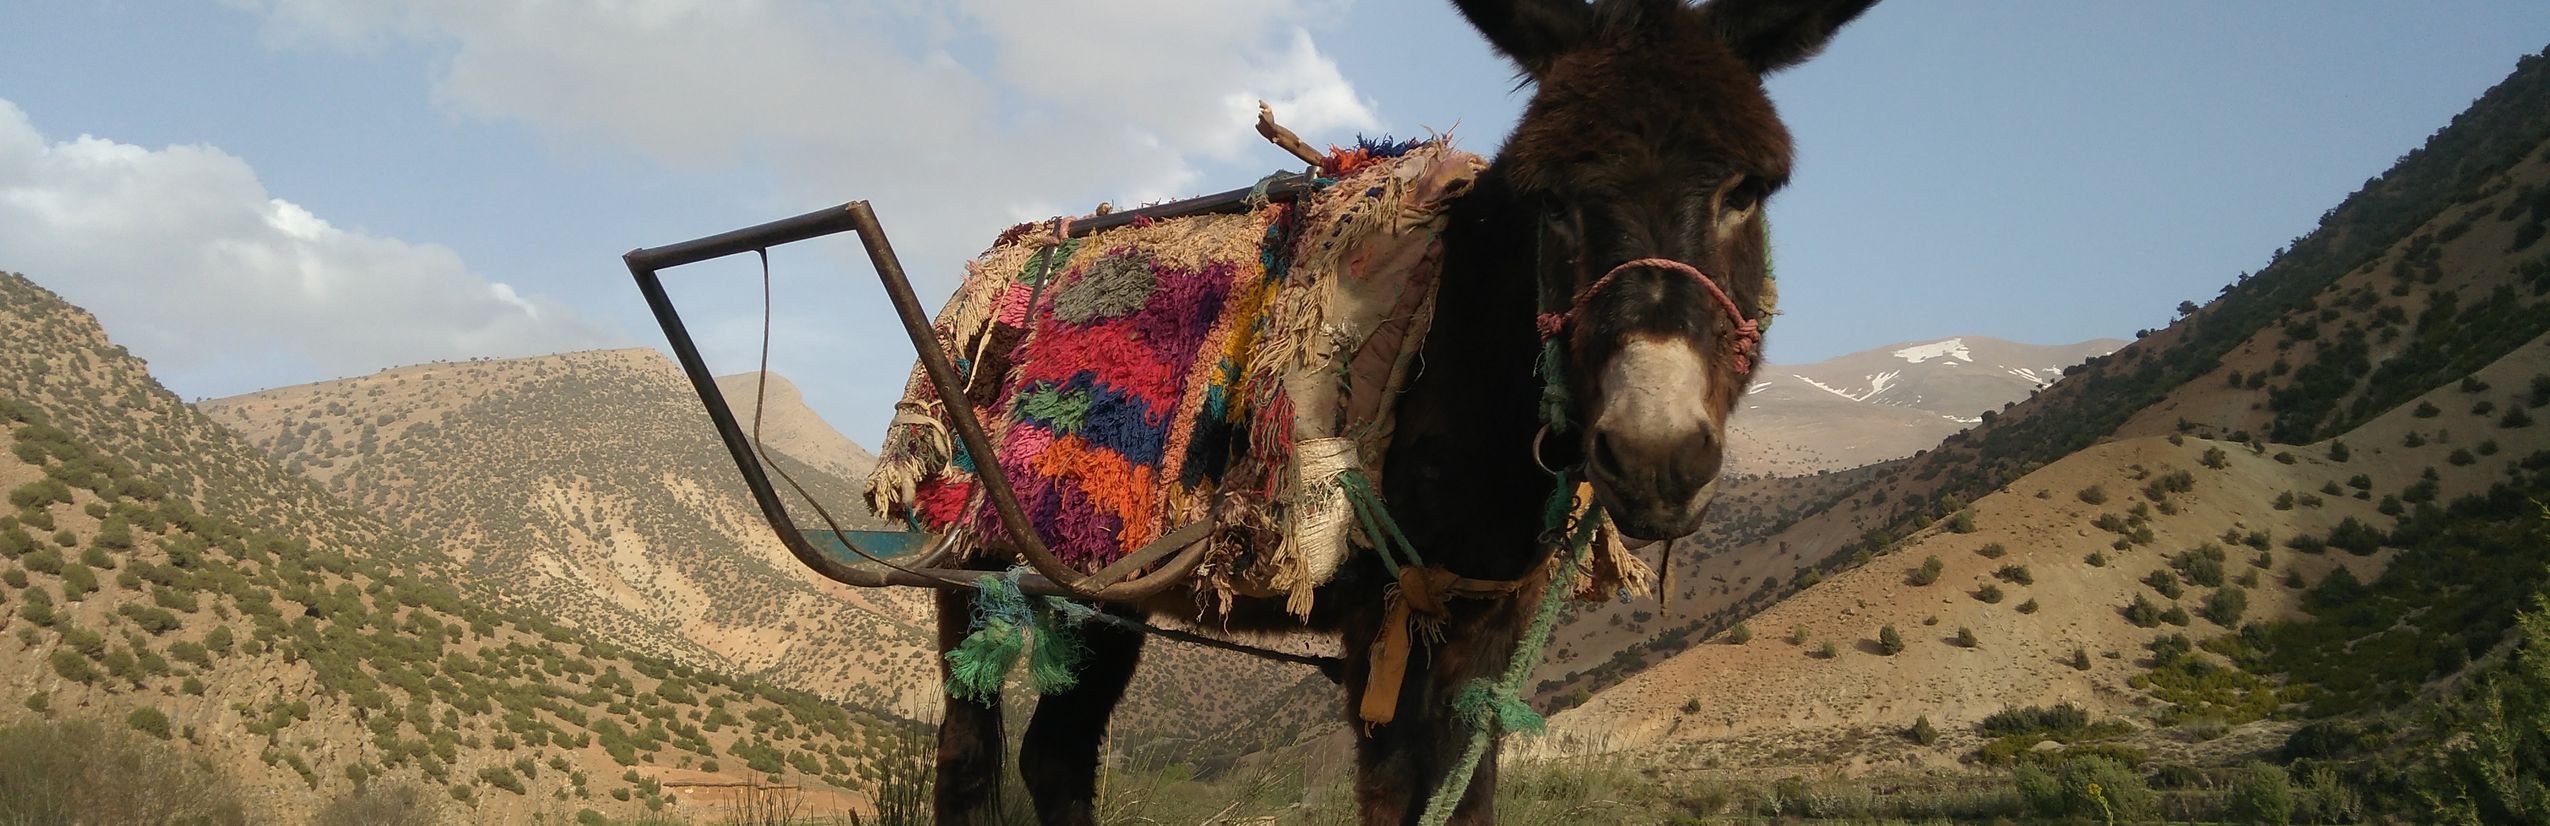 Marokko mit Kindern - Esel